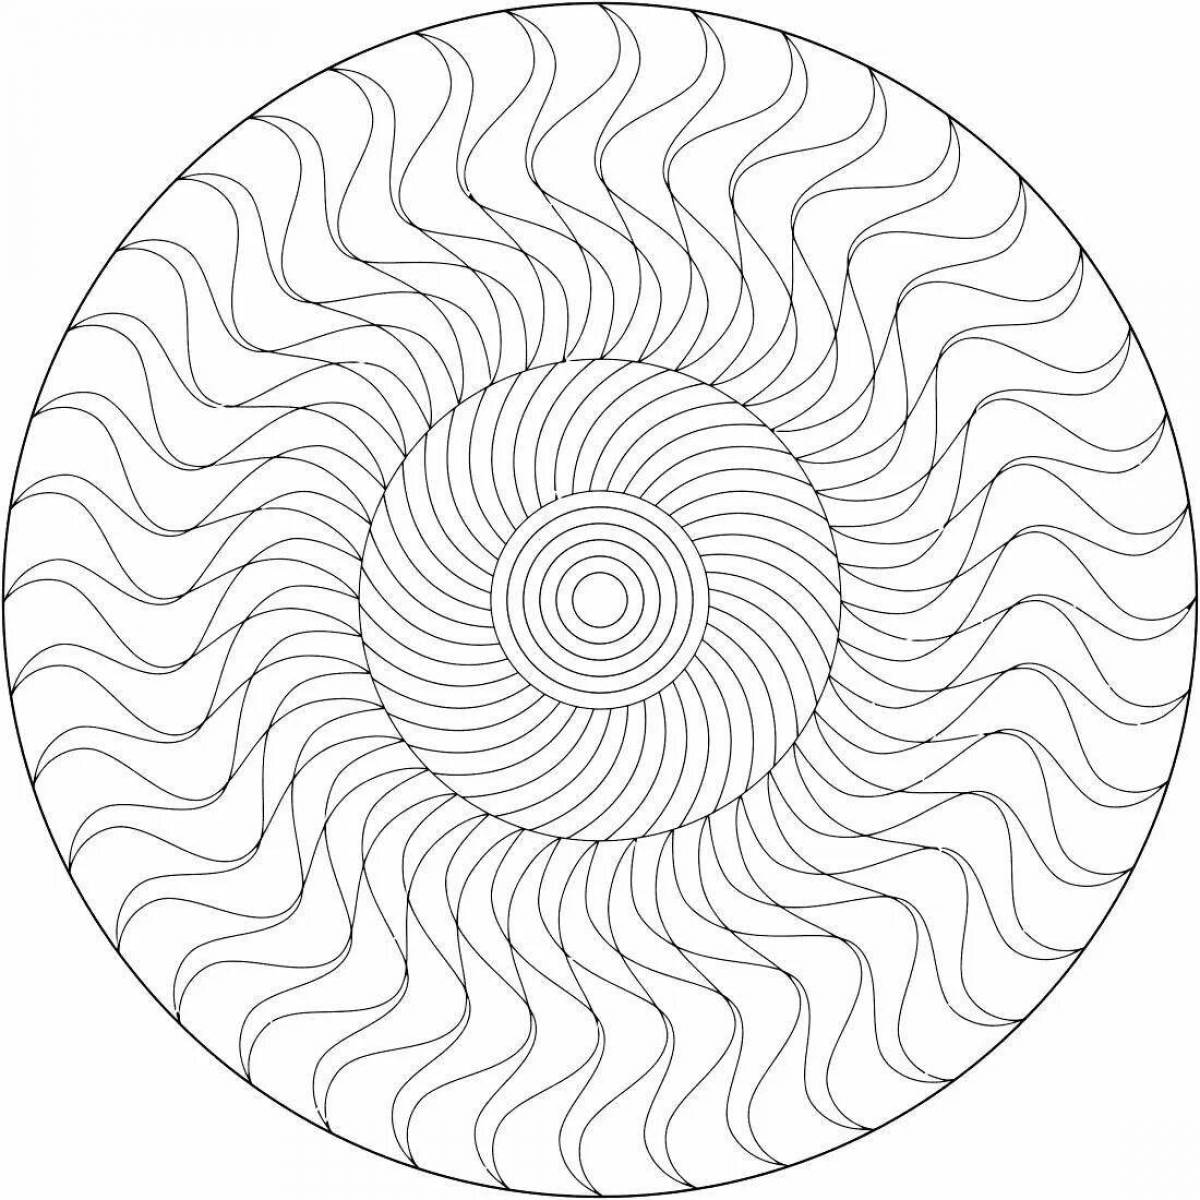 Coloring page elegant spiral pattern